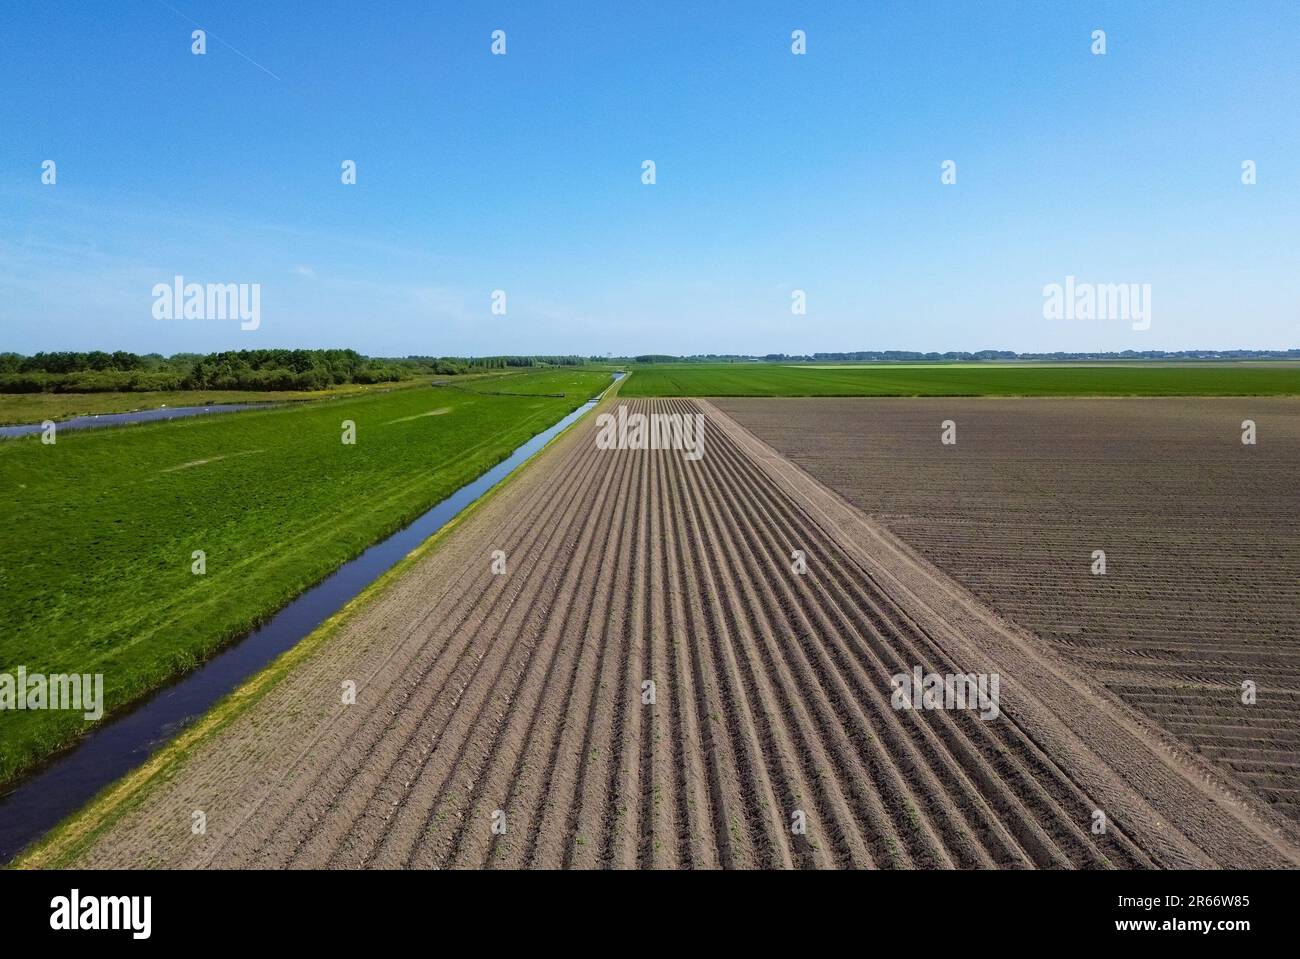 Image en perspective d'un champ agricole dans lequel des semis ont eu lieu Banque D'Images